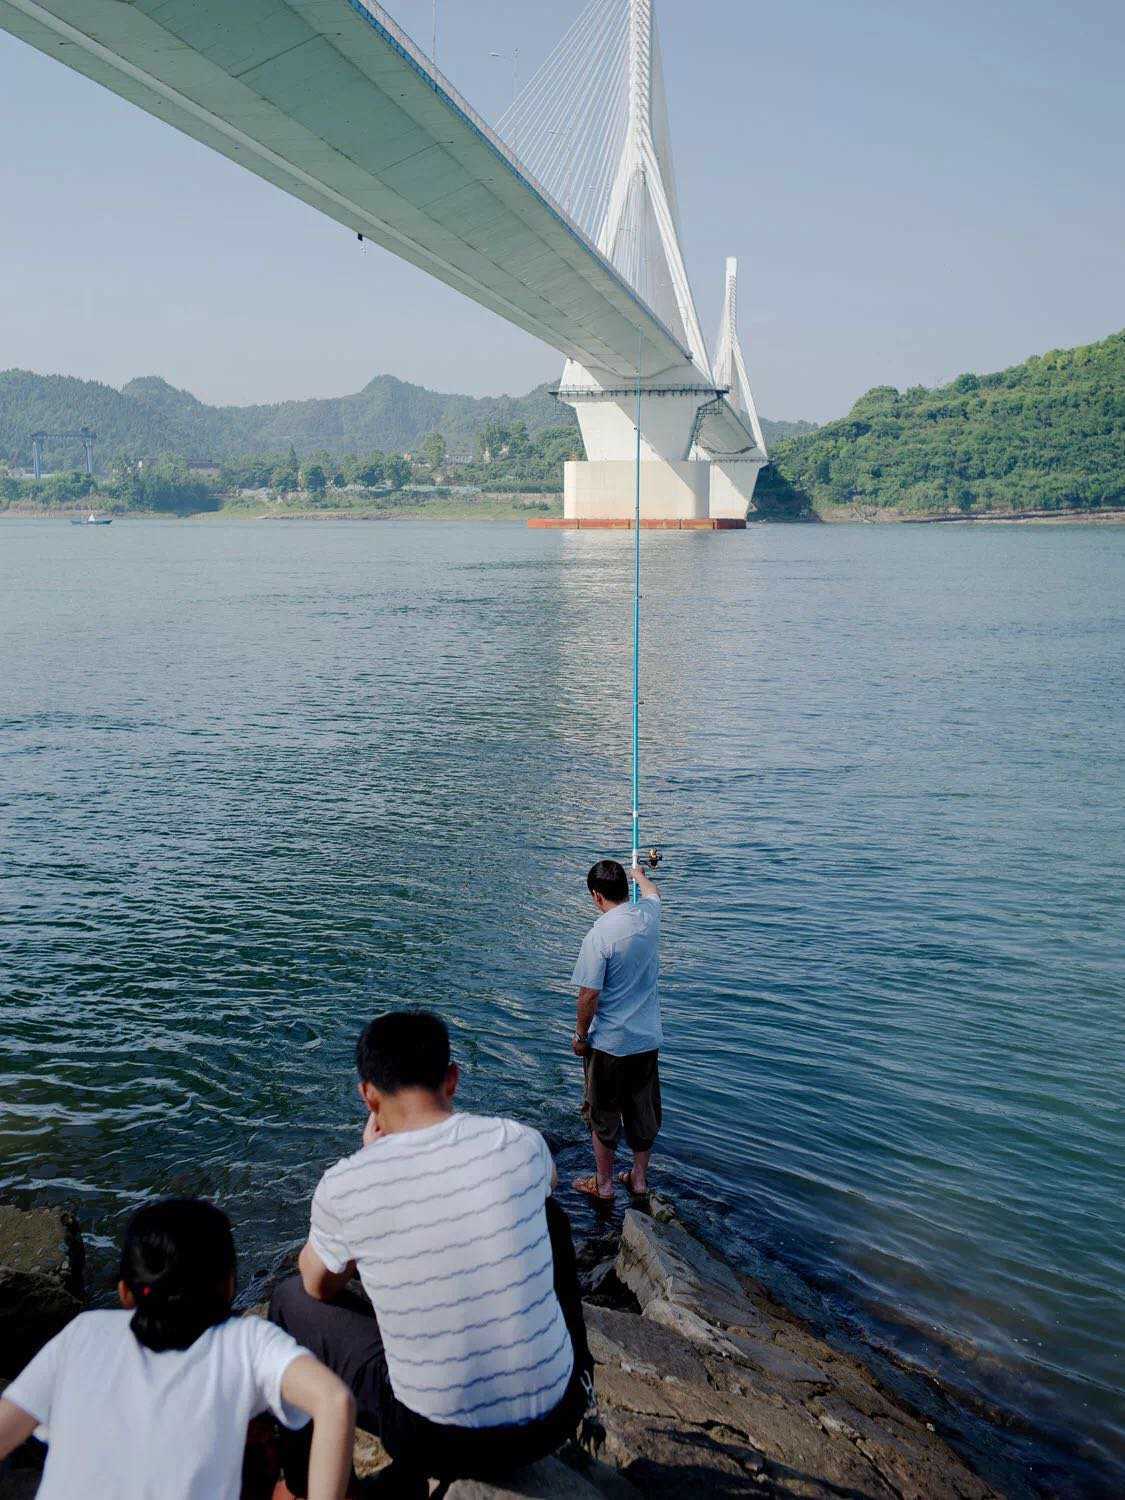 安逸闲适的生活情趣 三峡畔的江城宜昌